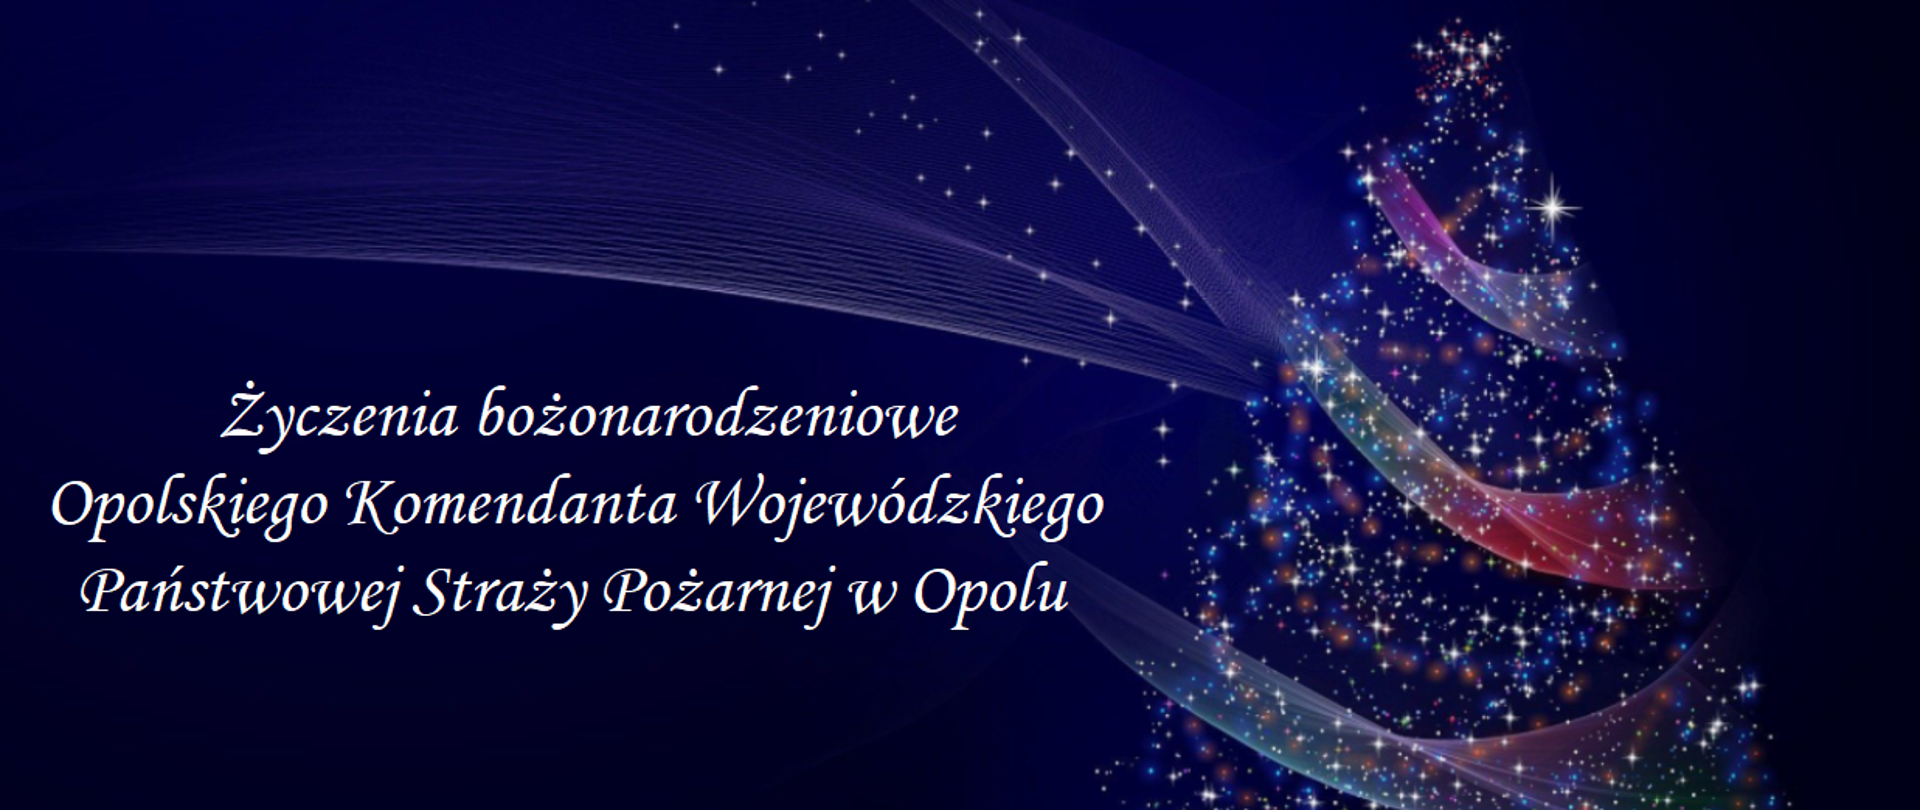 Kartka świąteczna z życzeniami bożonarodzeniowymi i noworocznymi składanymi przez Opolskiego Komendanta Wojewódzkiego PSP w Opolu st. bryg. Krzysztofa Kędryka.